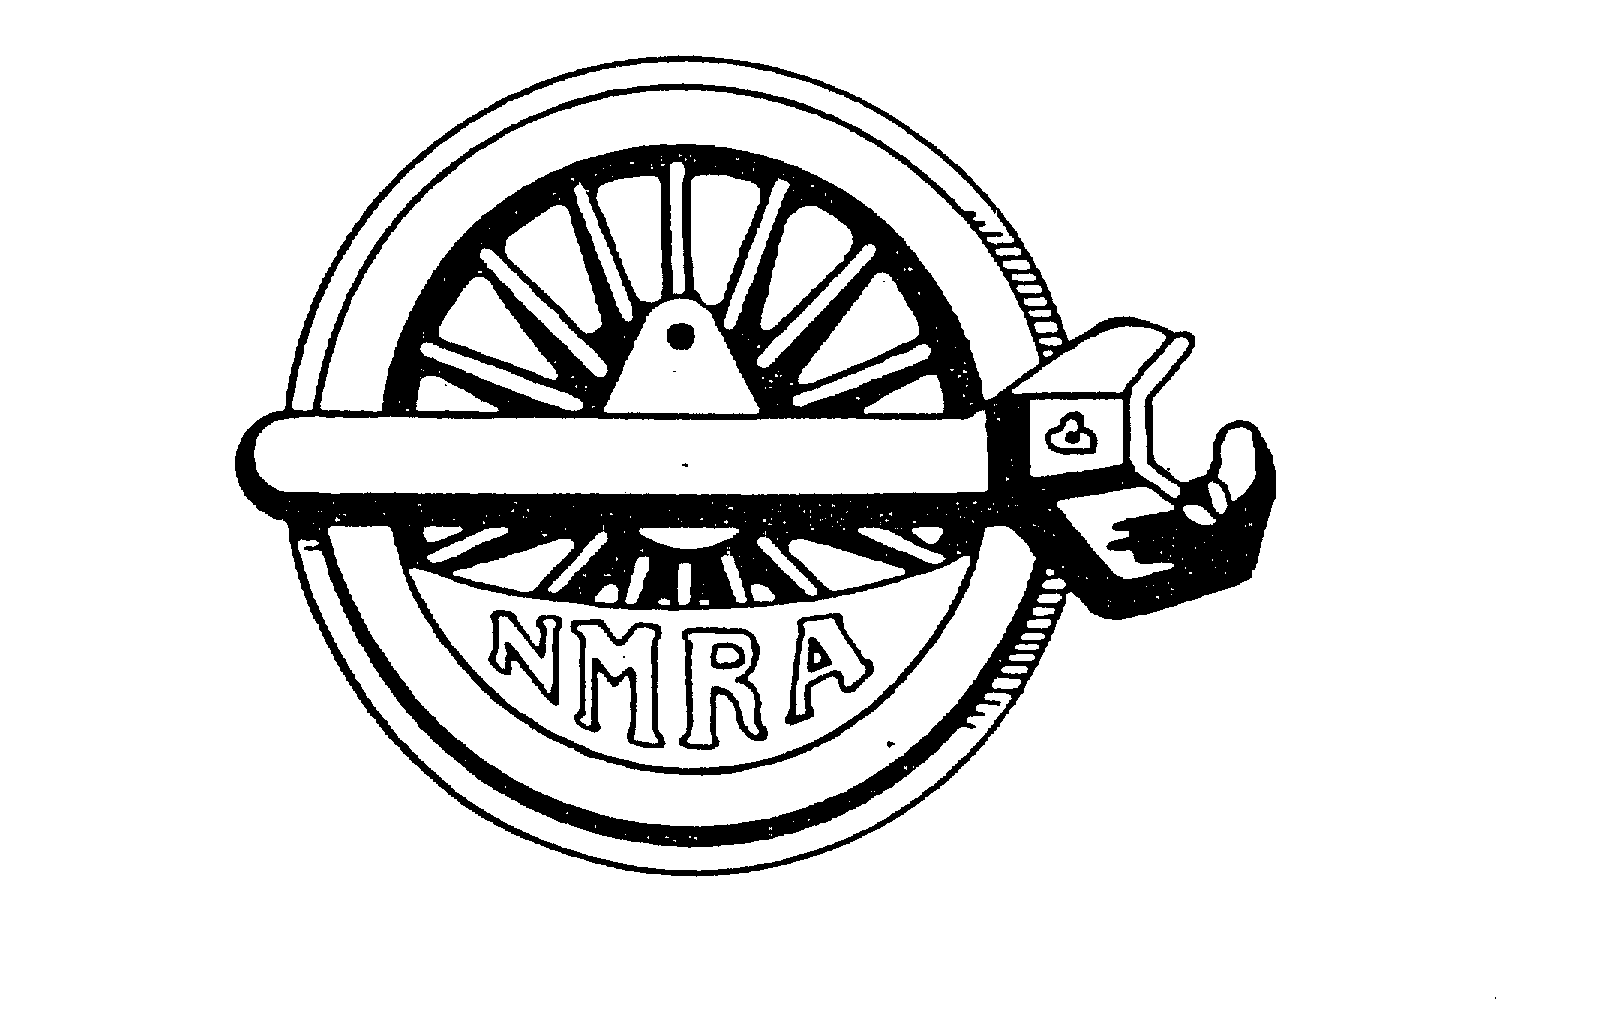 NMRA